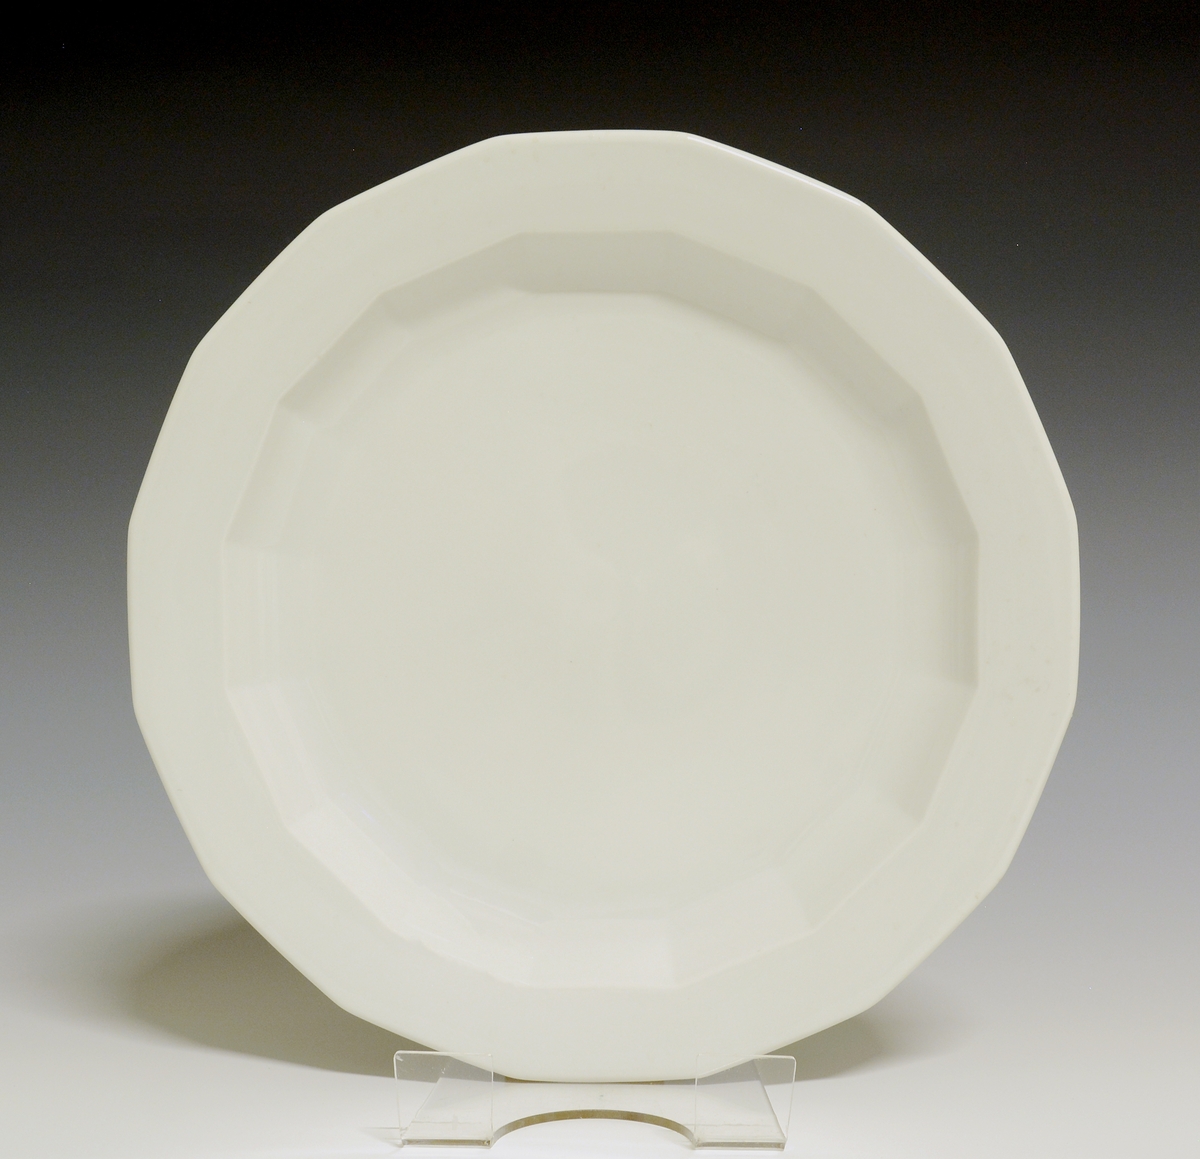 Mangekantet tallerken av porselen med hvit glasur. 
Modell: Octavia, tegnet av Grete Rønning i 1977.
